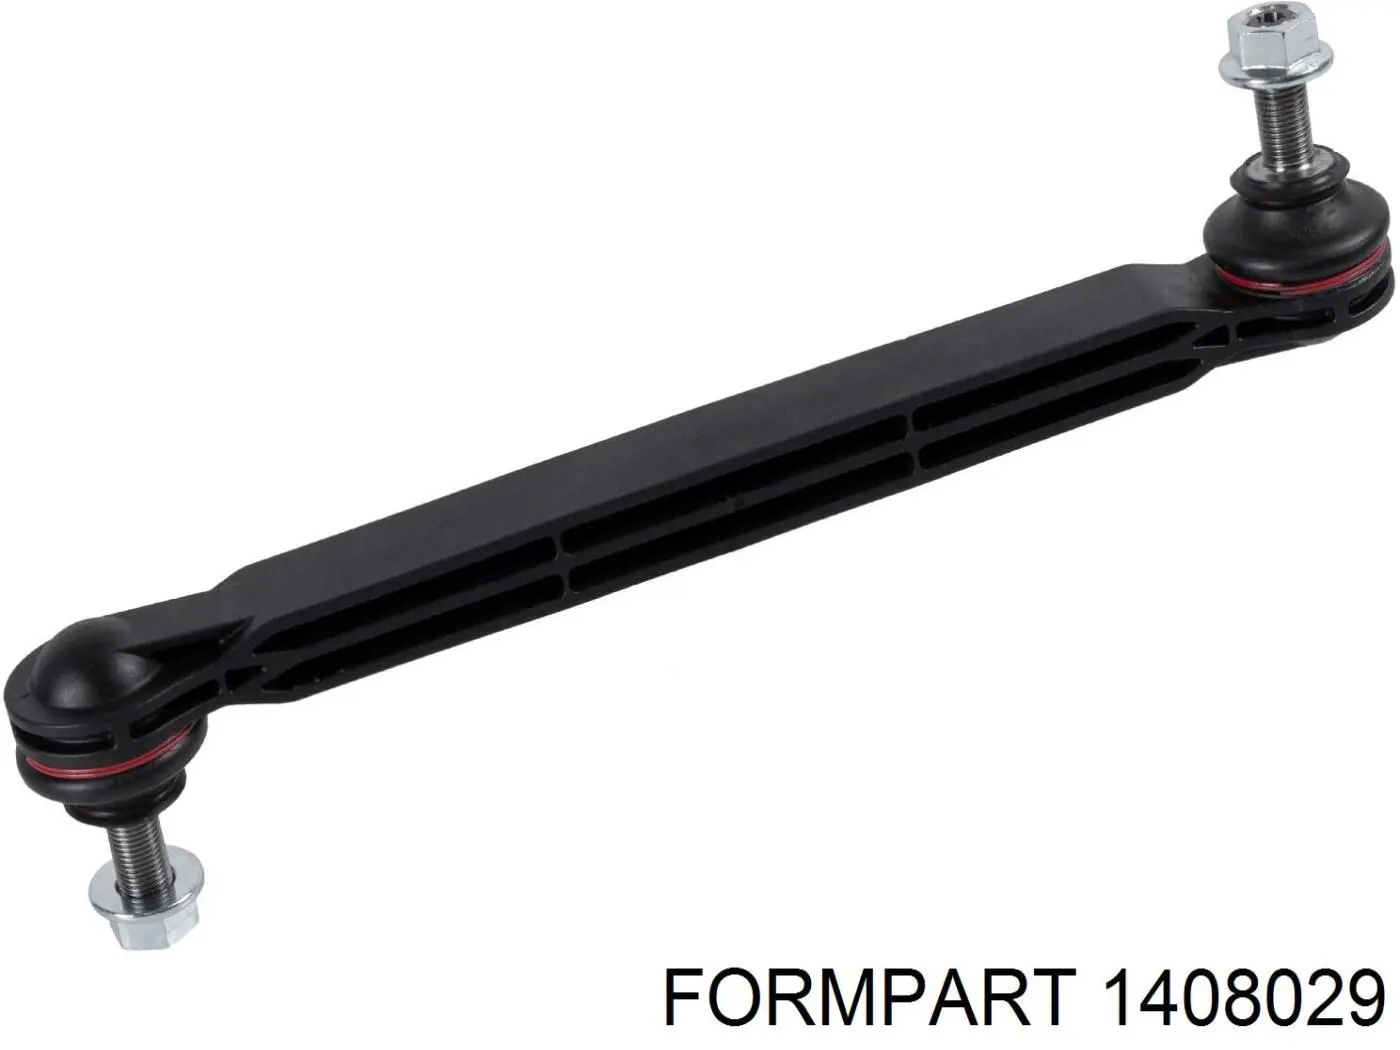 1408029 Formpart/Otoform montante de estabilizador dianteiro